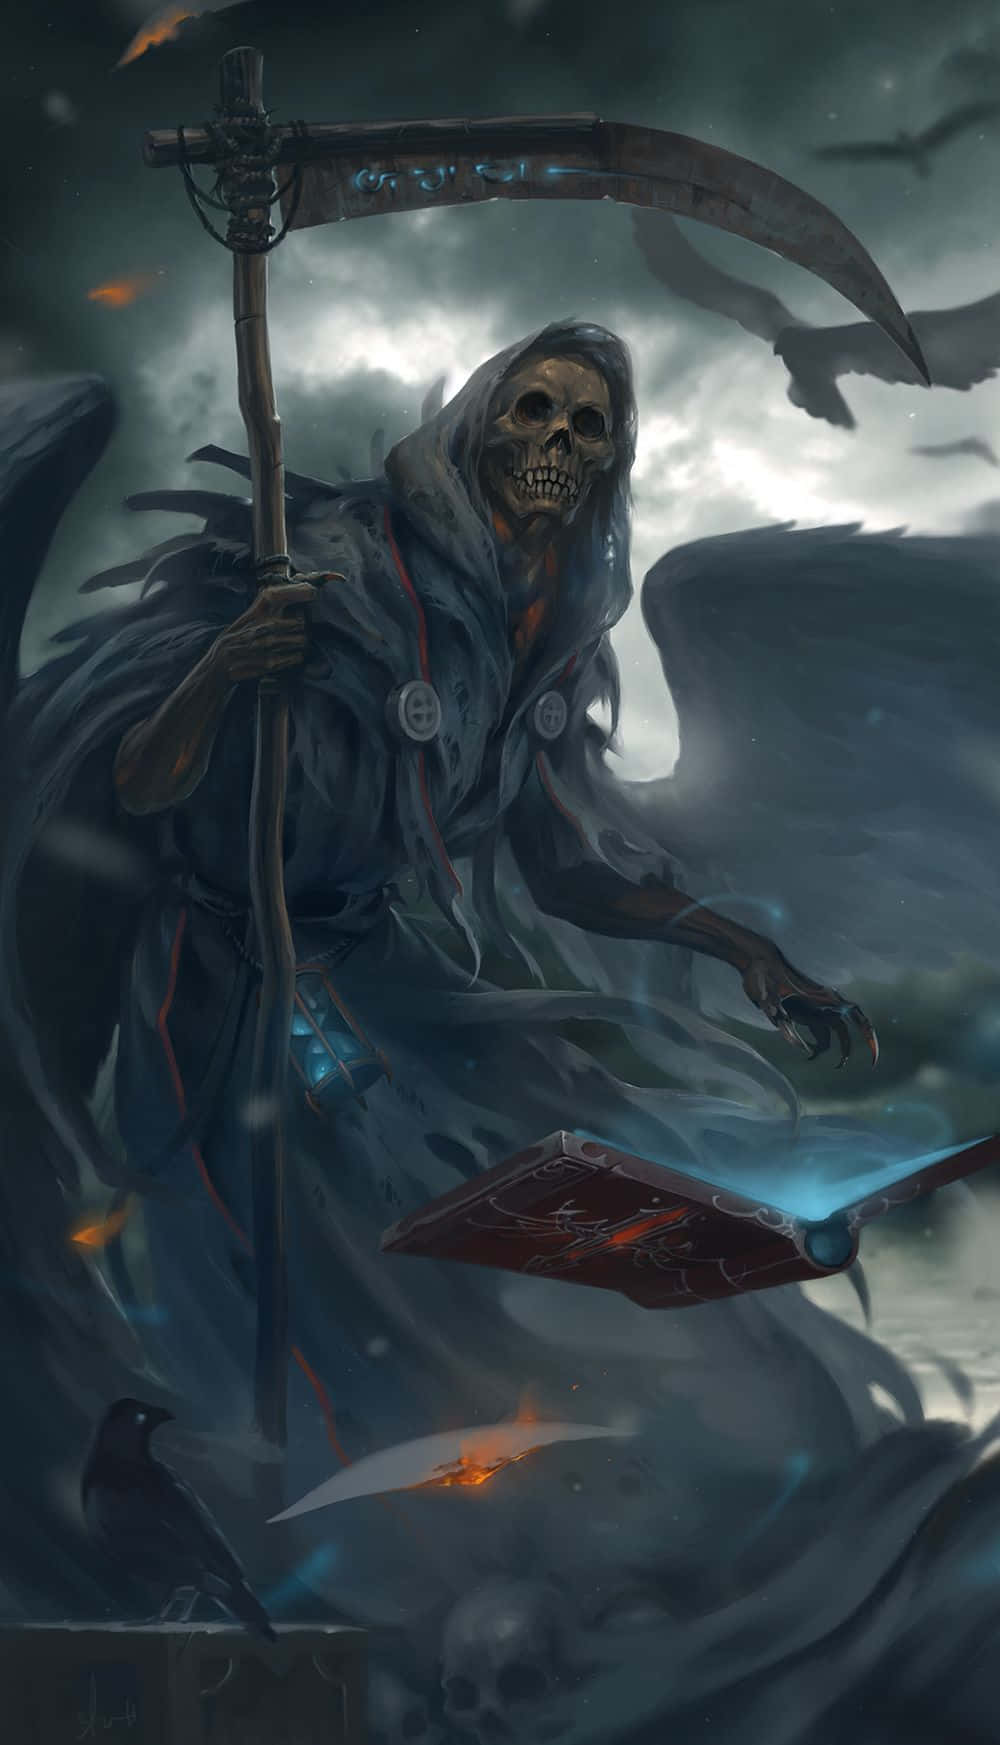 Captivating Grim Reaper Image